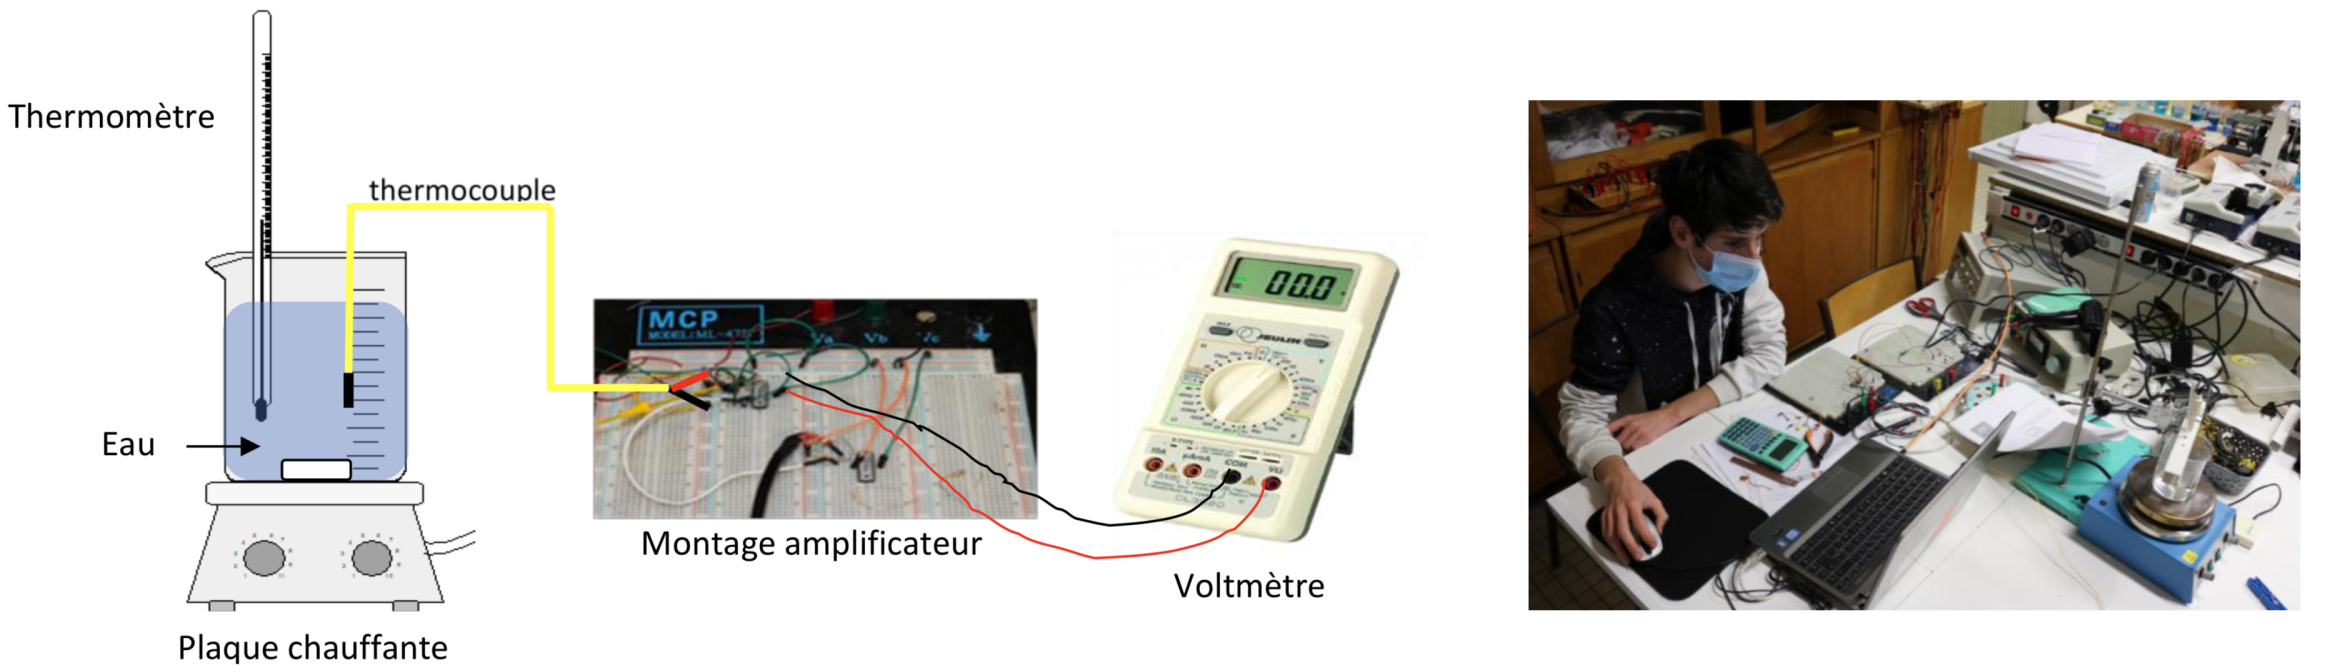 Schéma du montage permettant de trouver la relation entre la température et la tension aux bornes d'un thermocouple